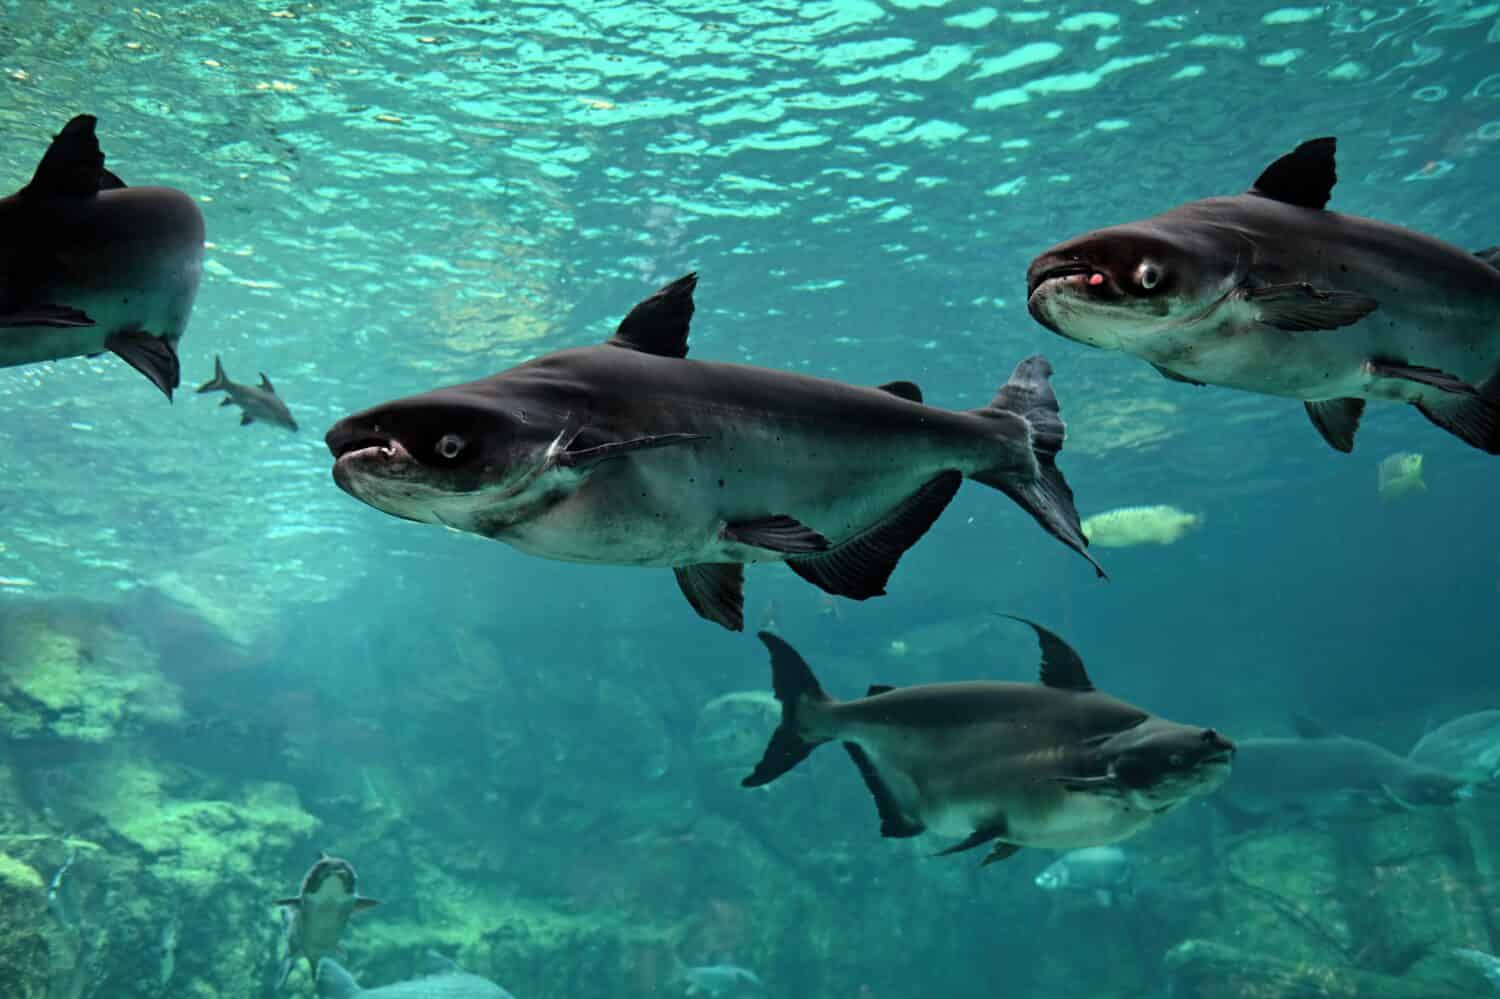 Mekong giant catfish in freshwater aquarium, selective focus.